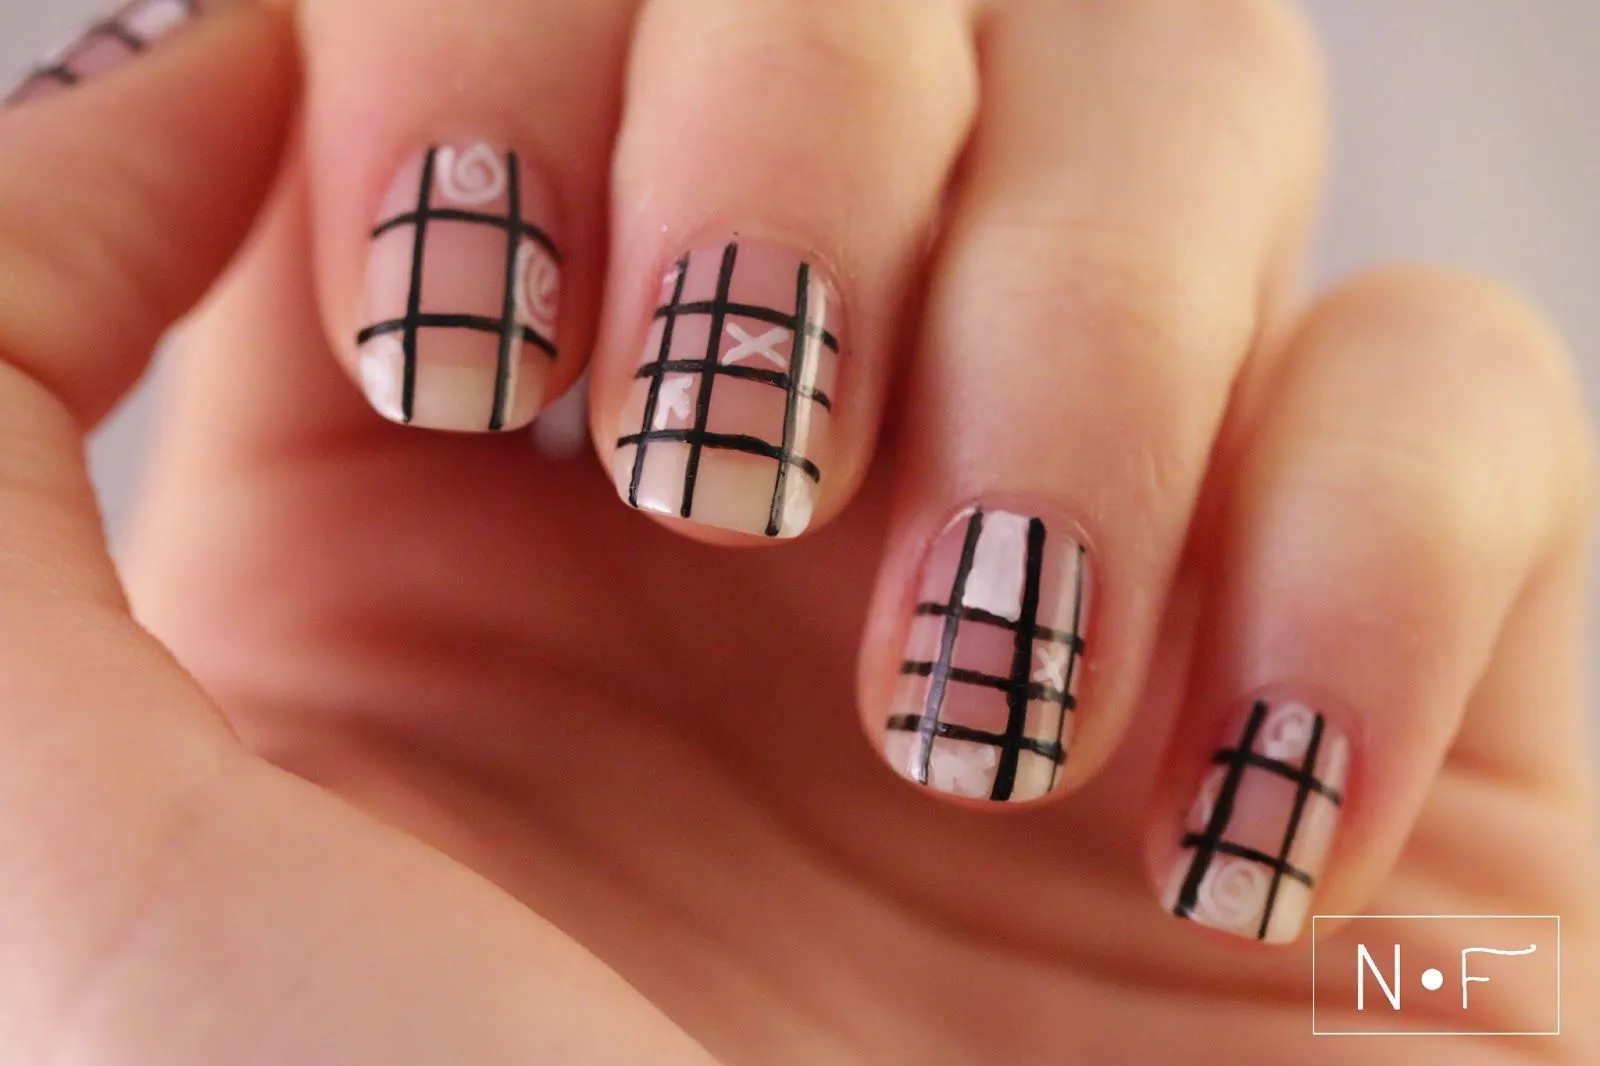 Curiosa manicura de uñas en beige, adornadas con líneas formando cuadros en color negro y blanco.